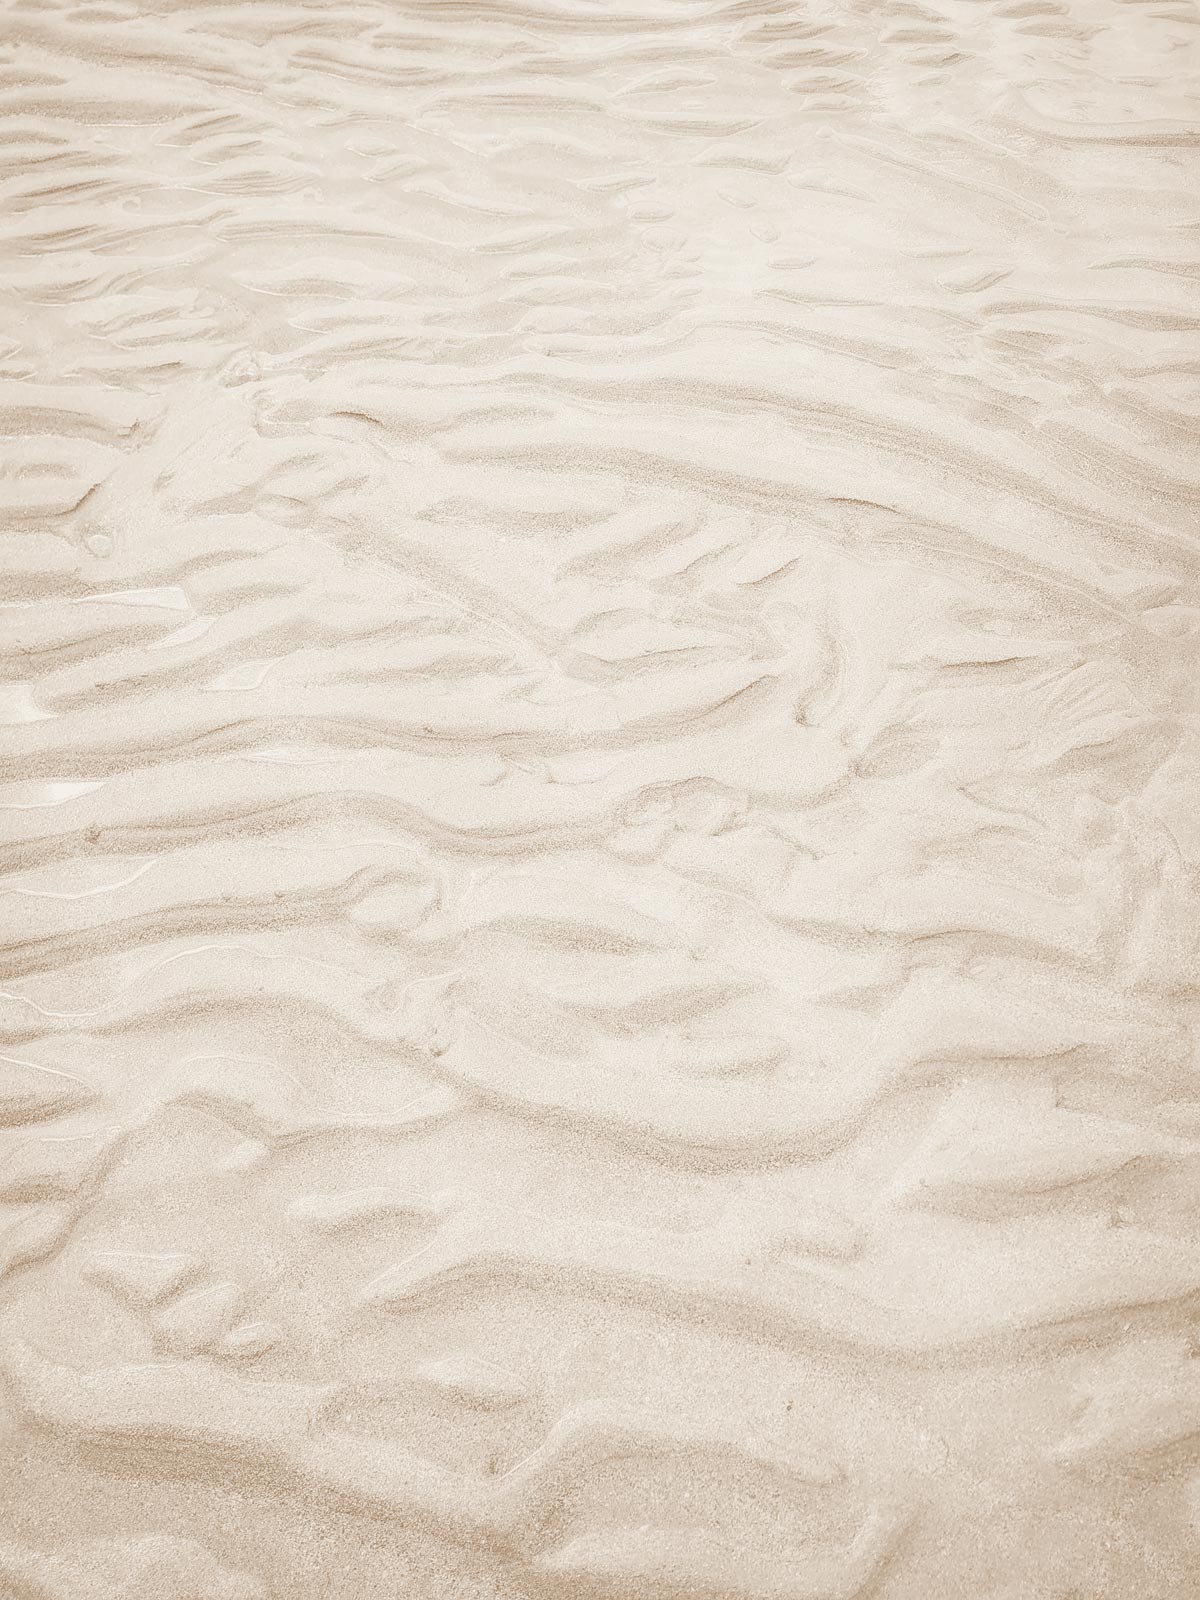 zen sand